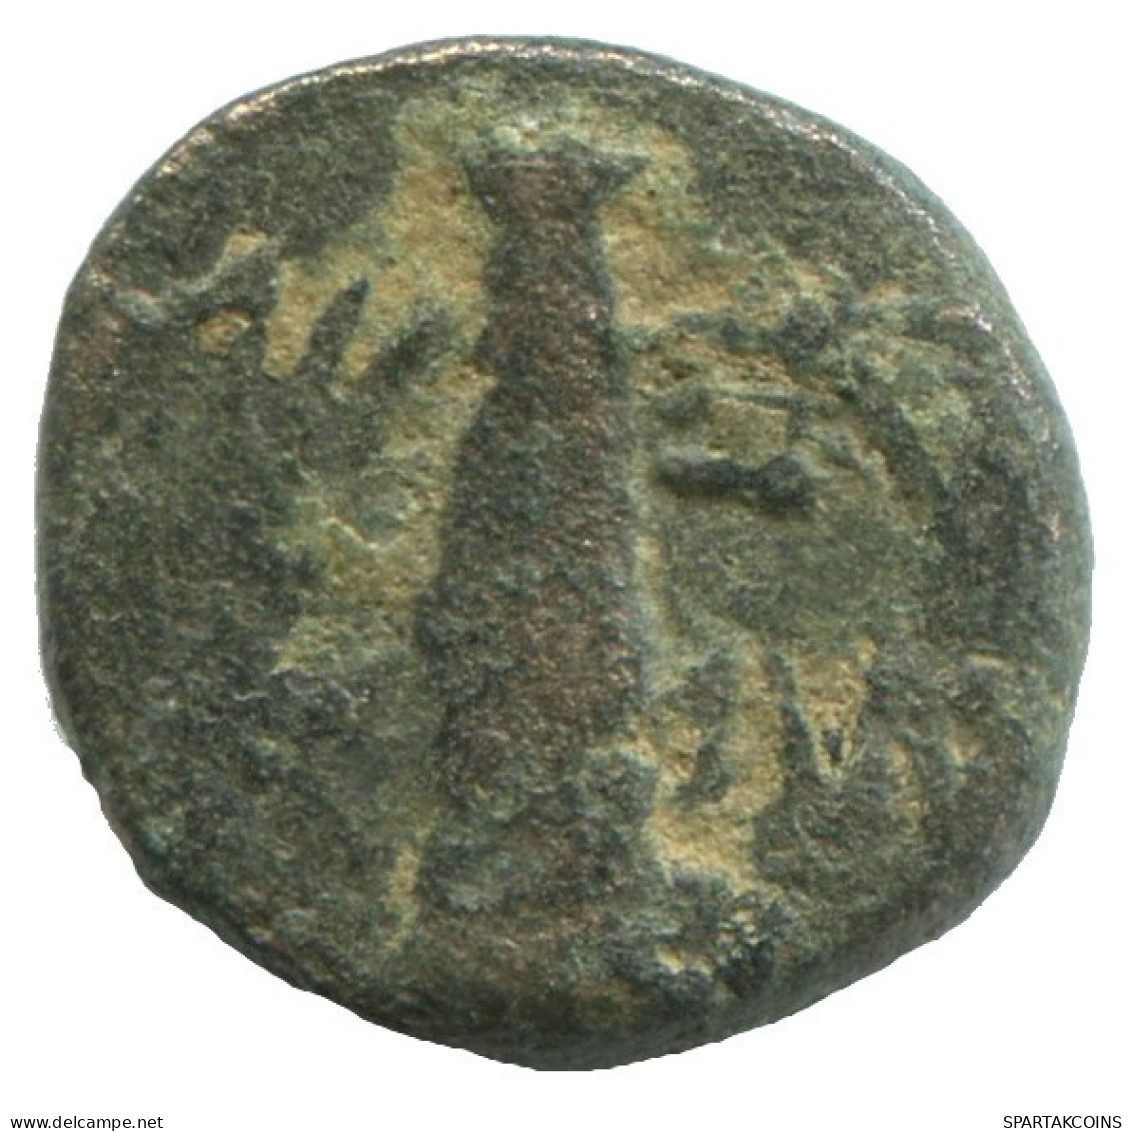 Auténtico Original GRIEGO ANTIGUO Moneda 2g/13mm #NNN1481.9.E.A - Greche